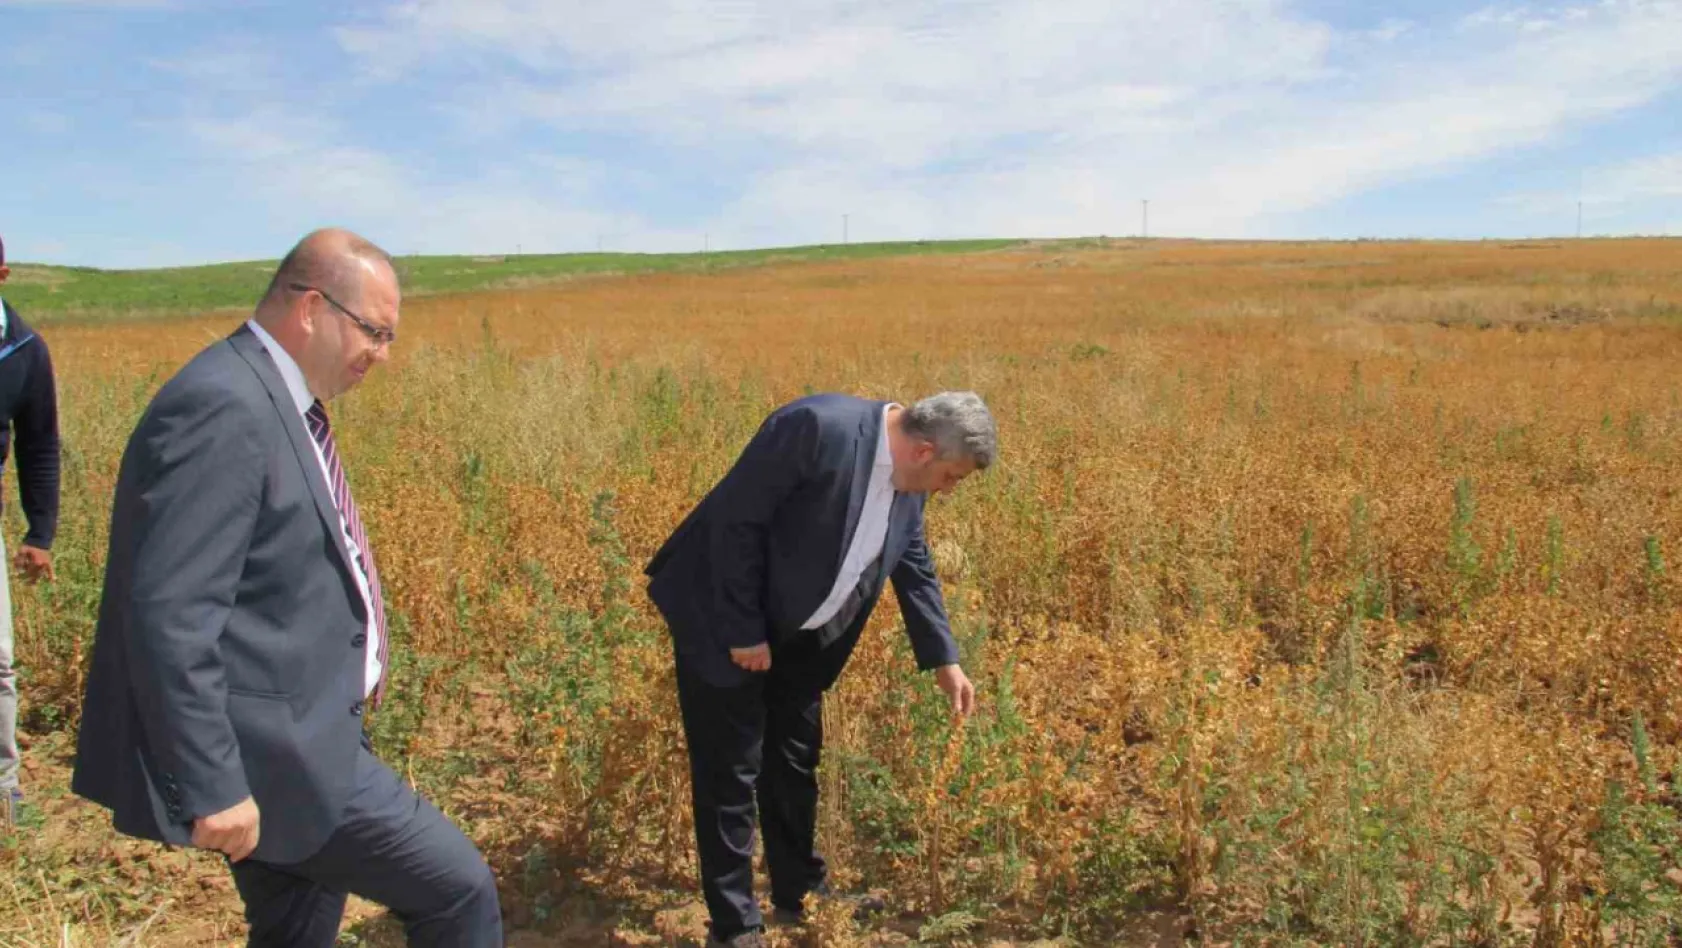 Başkan Altun ve Kaymakam Gülen'den ihtiyaç sahipleri için Aspir hasadı